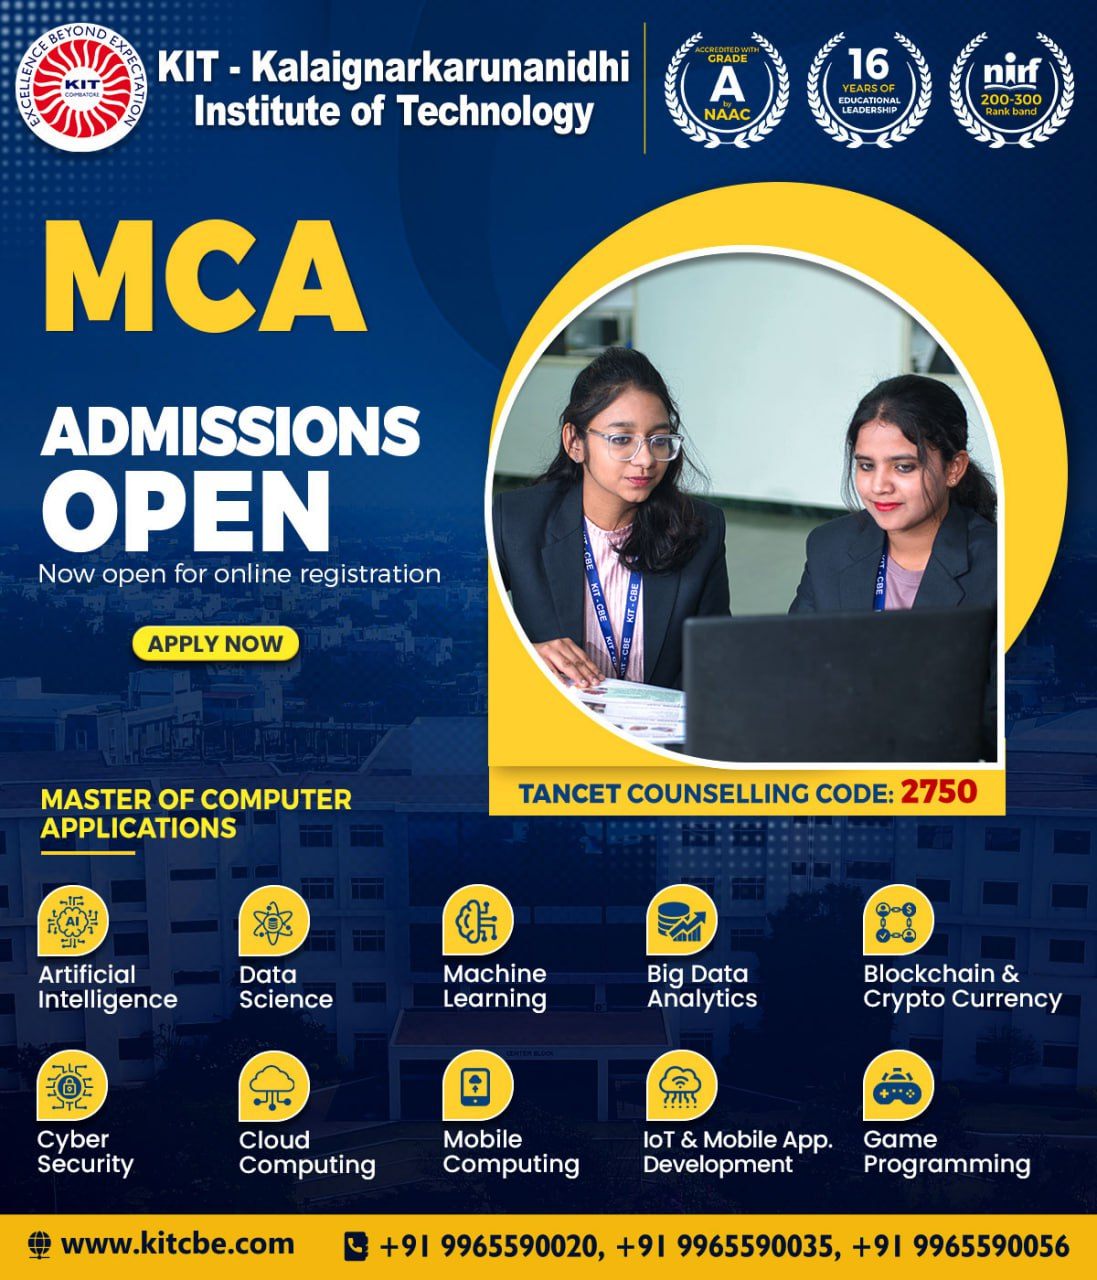 Best MCA Colleges in Coimbatore | Top Engineering Colleges in Coimbatore